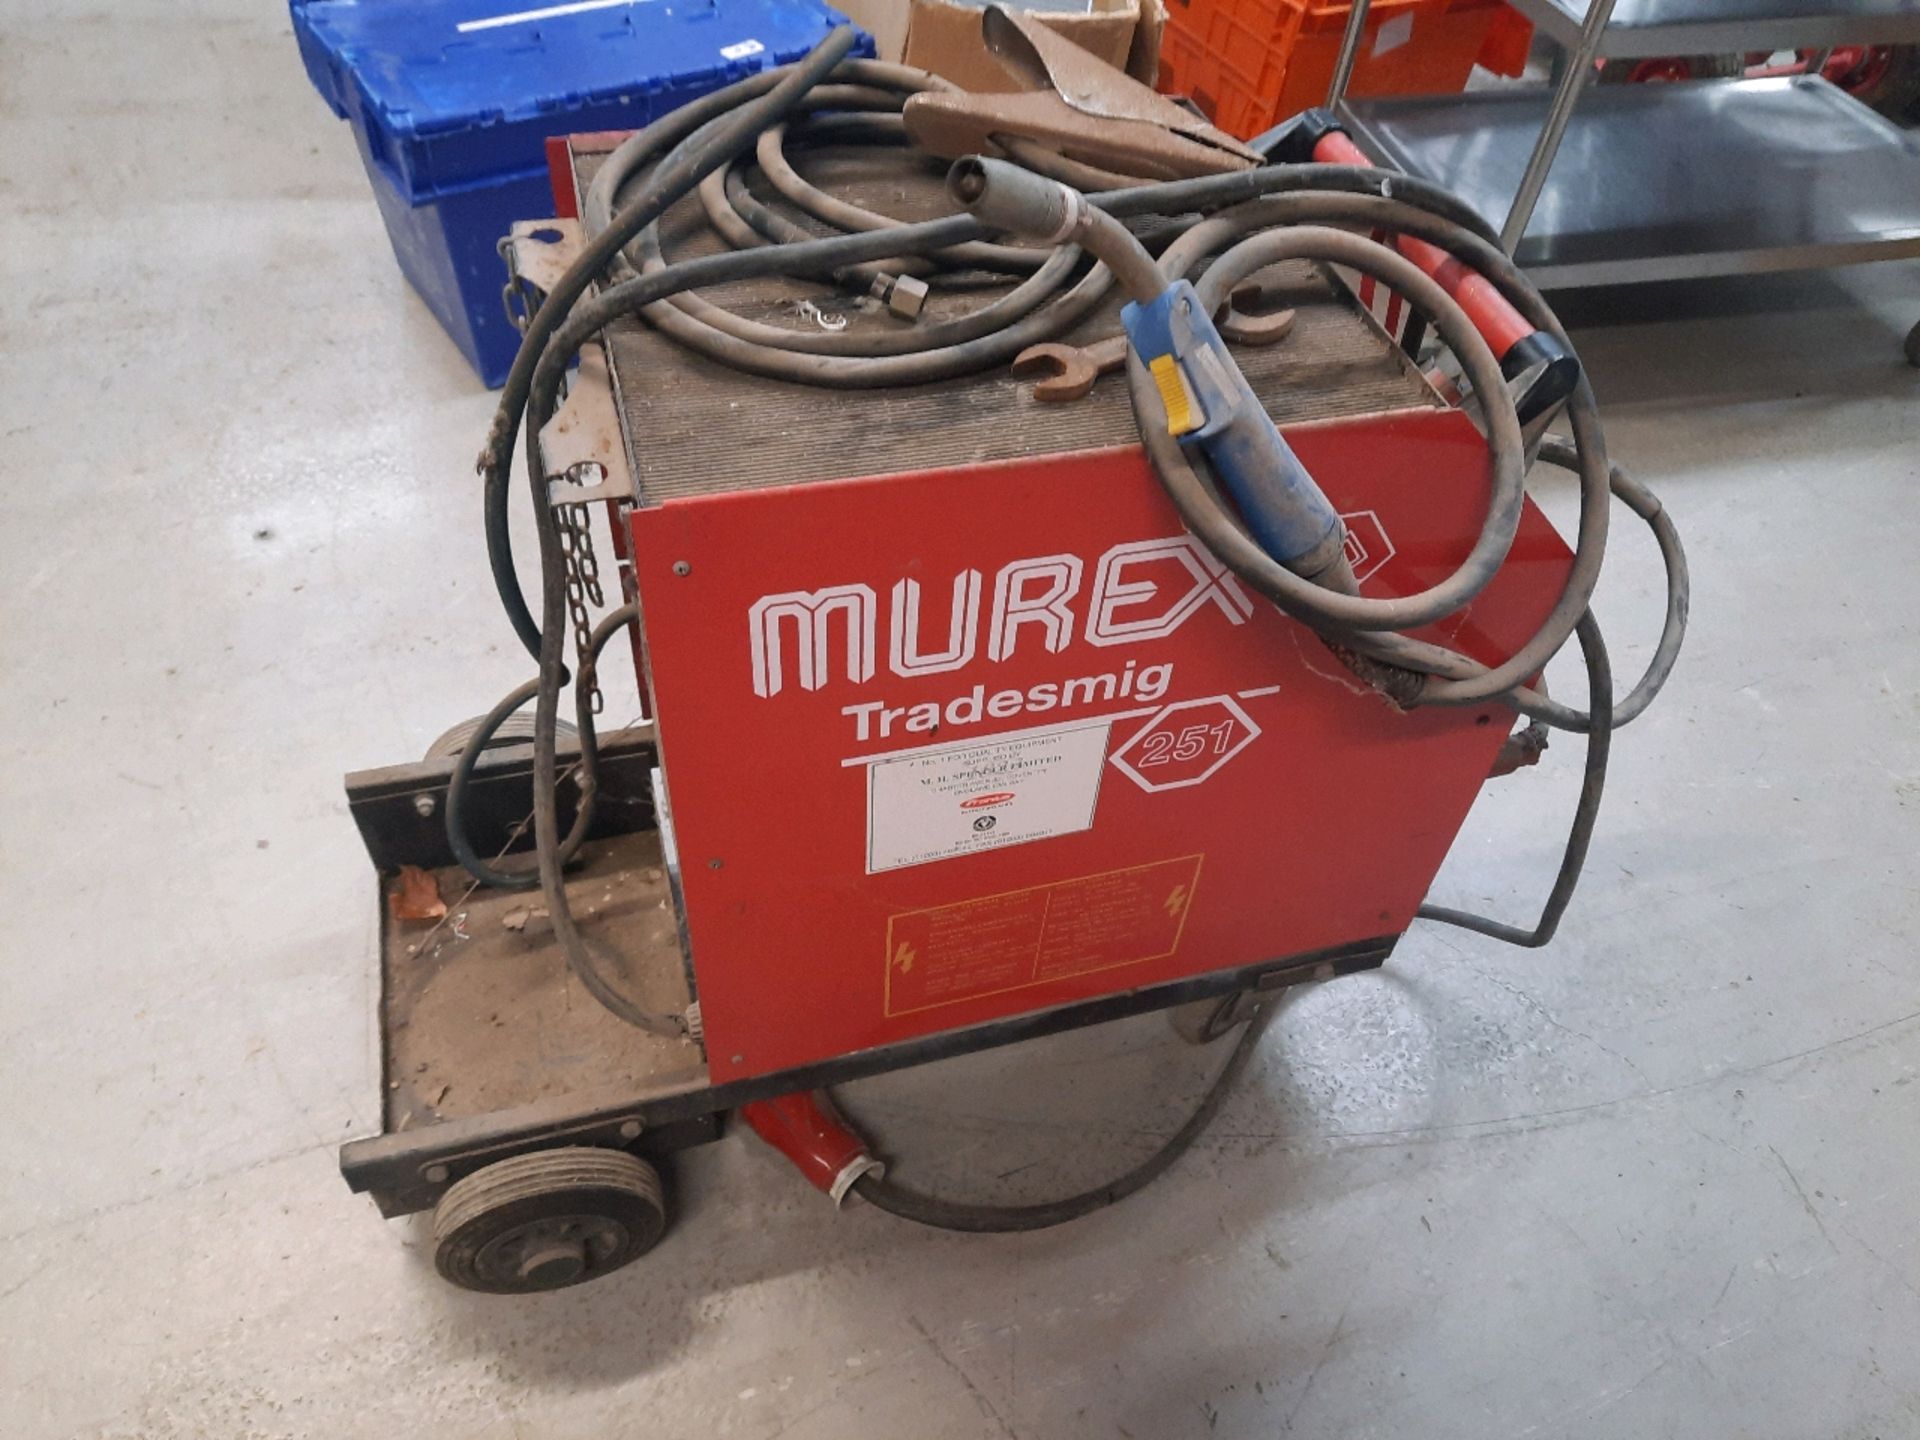 Murex Tradesmig 251 Welding Machine